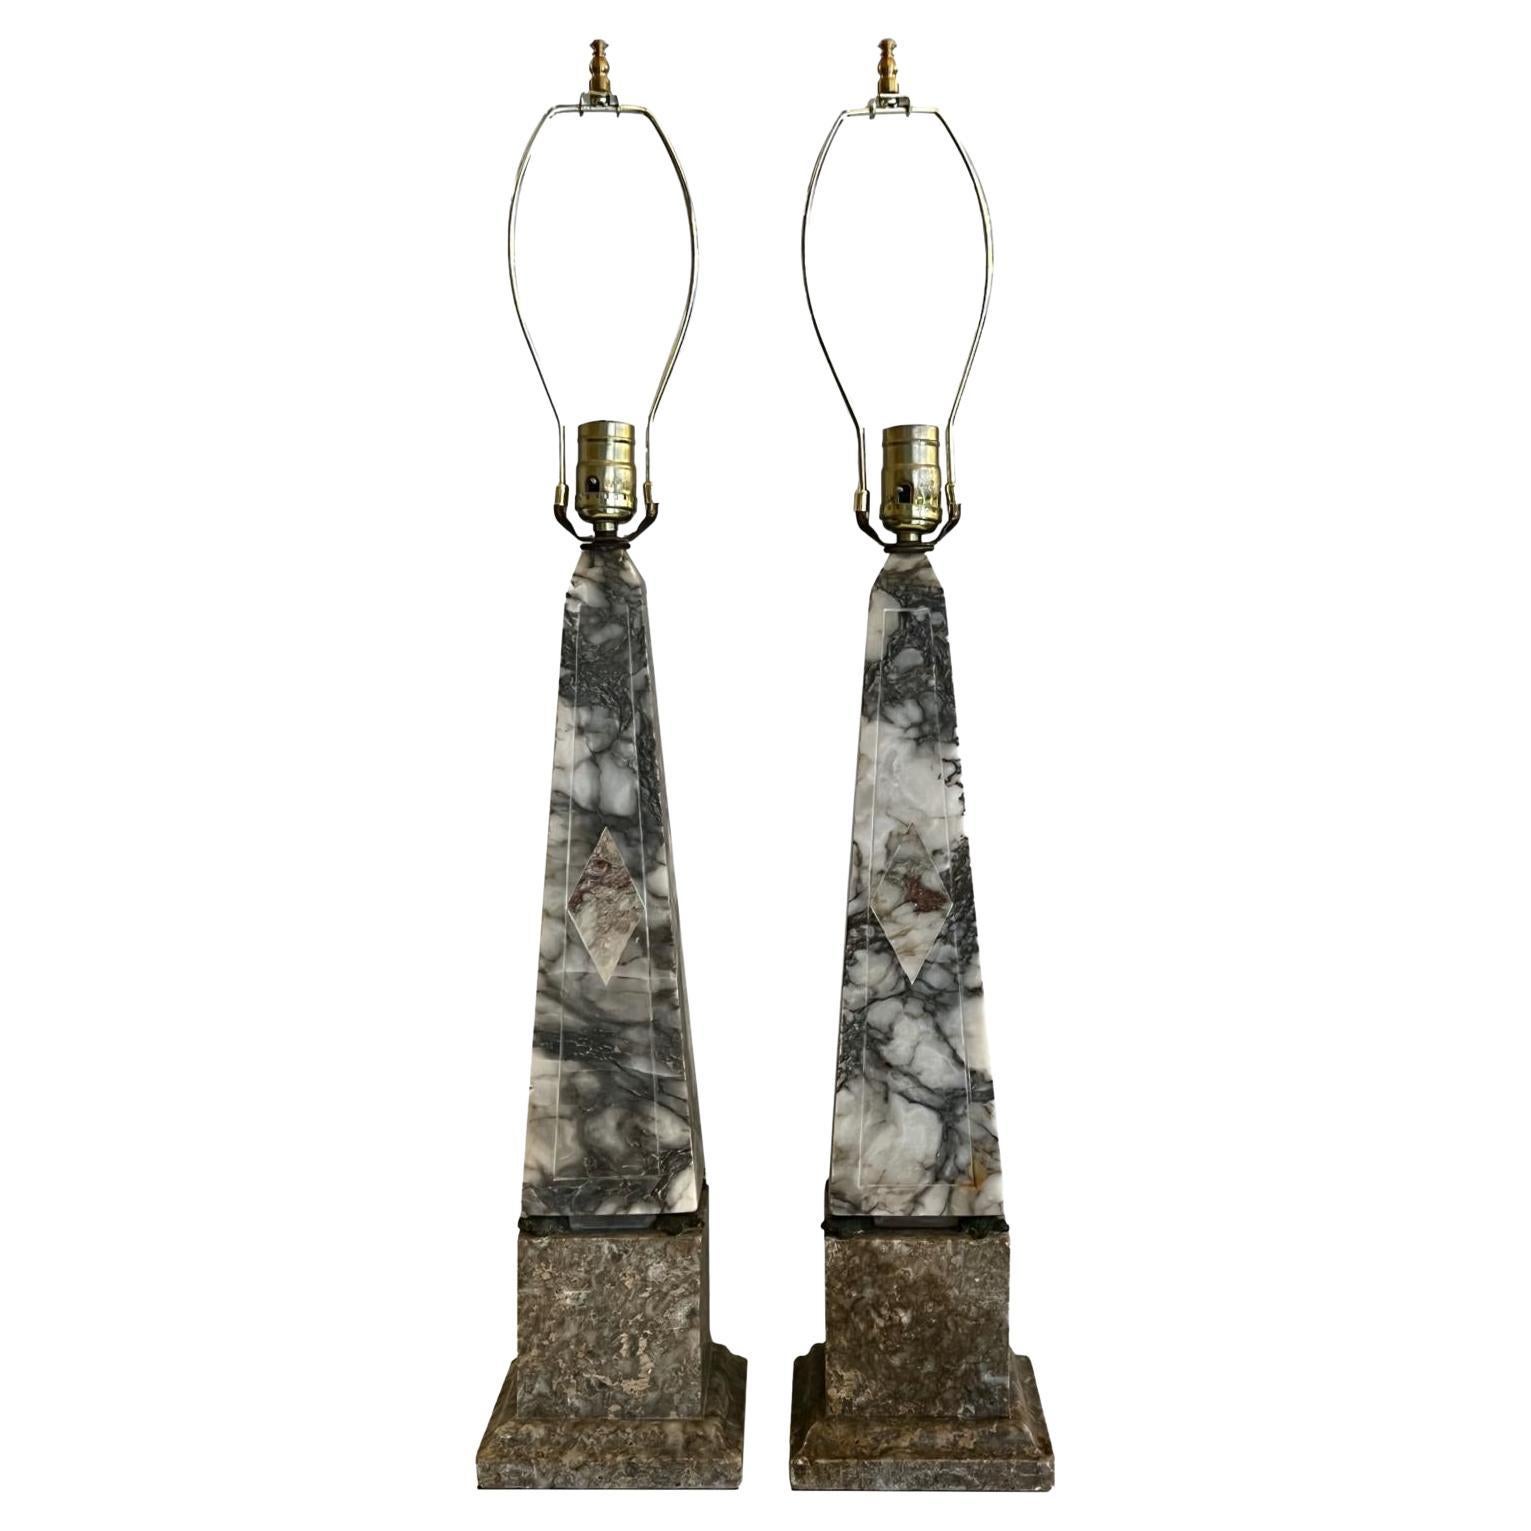 Pair of Alabaster Obelisk Lamps